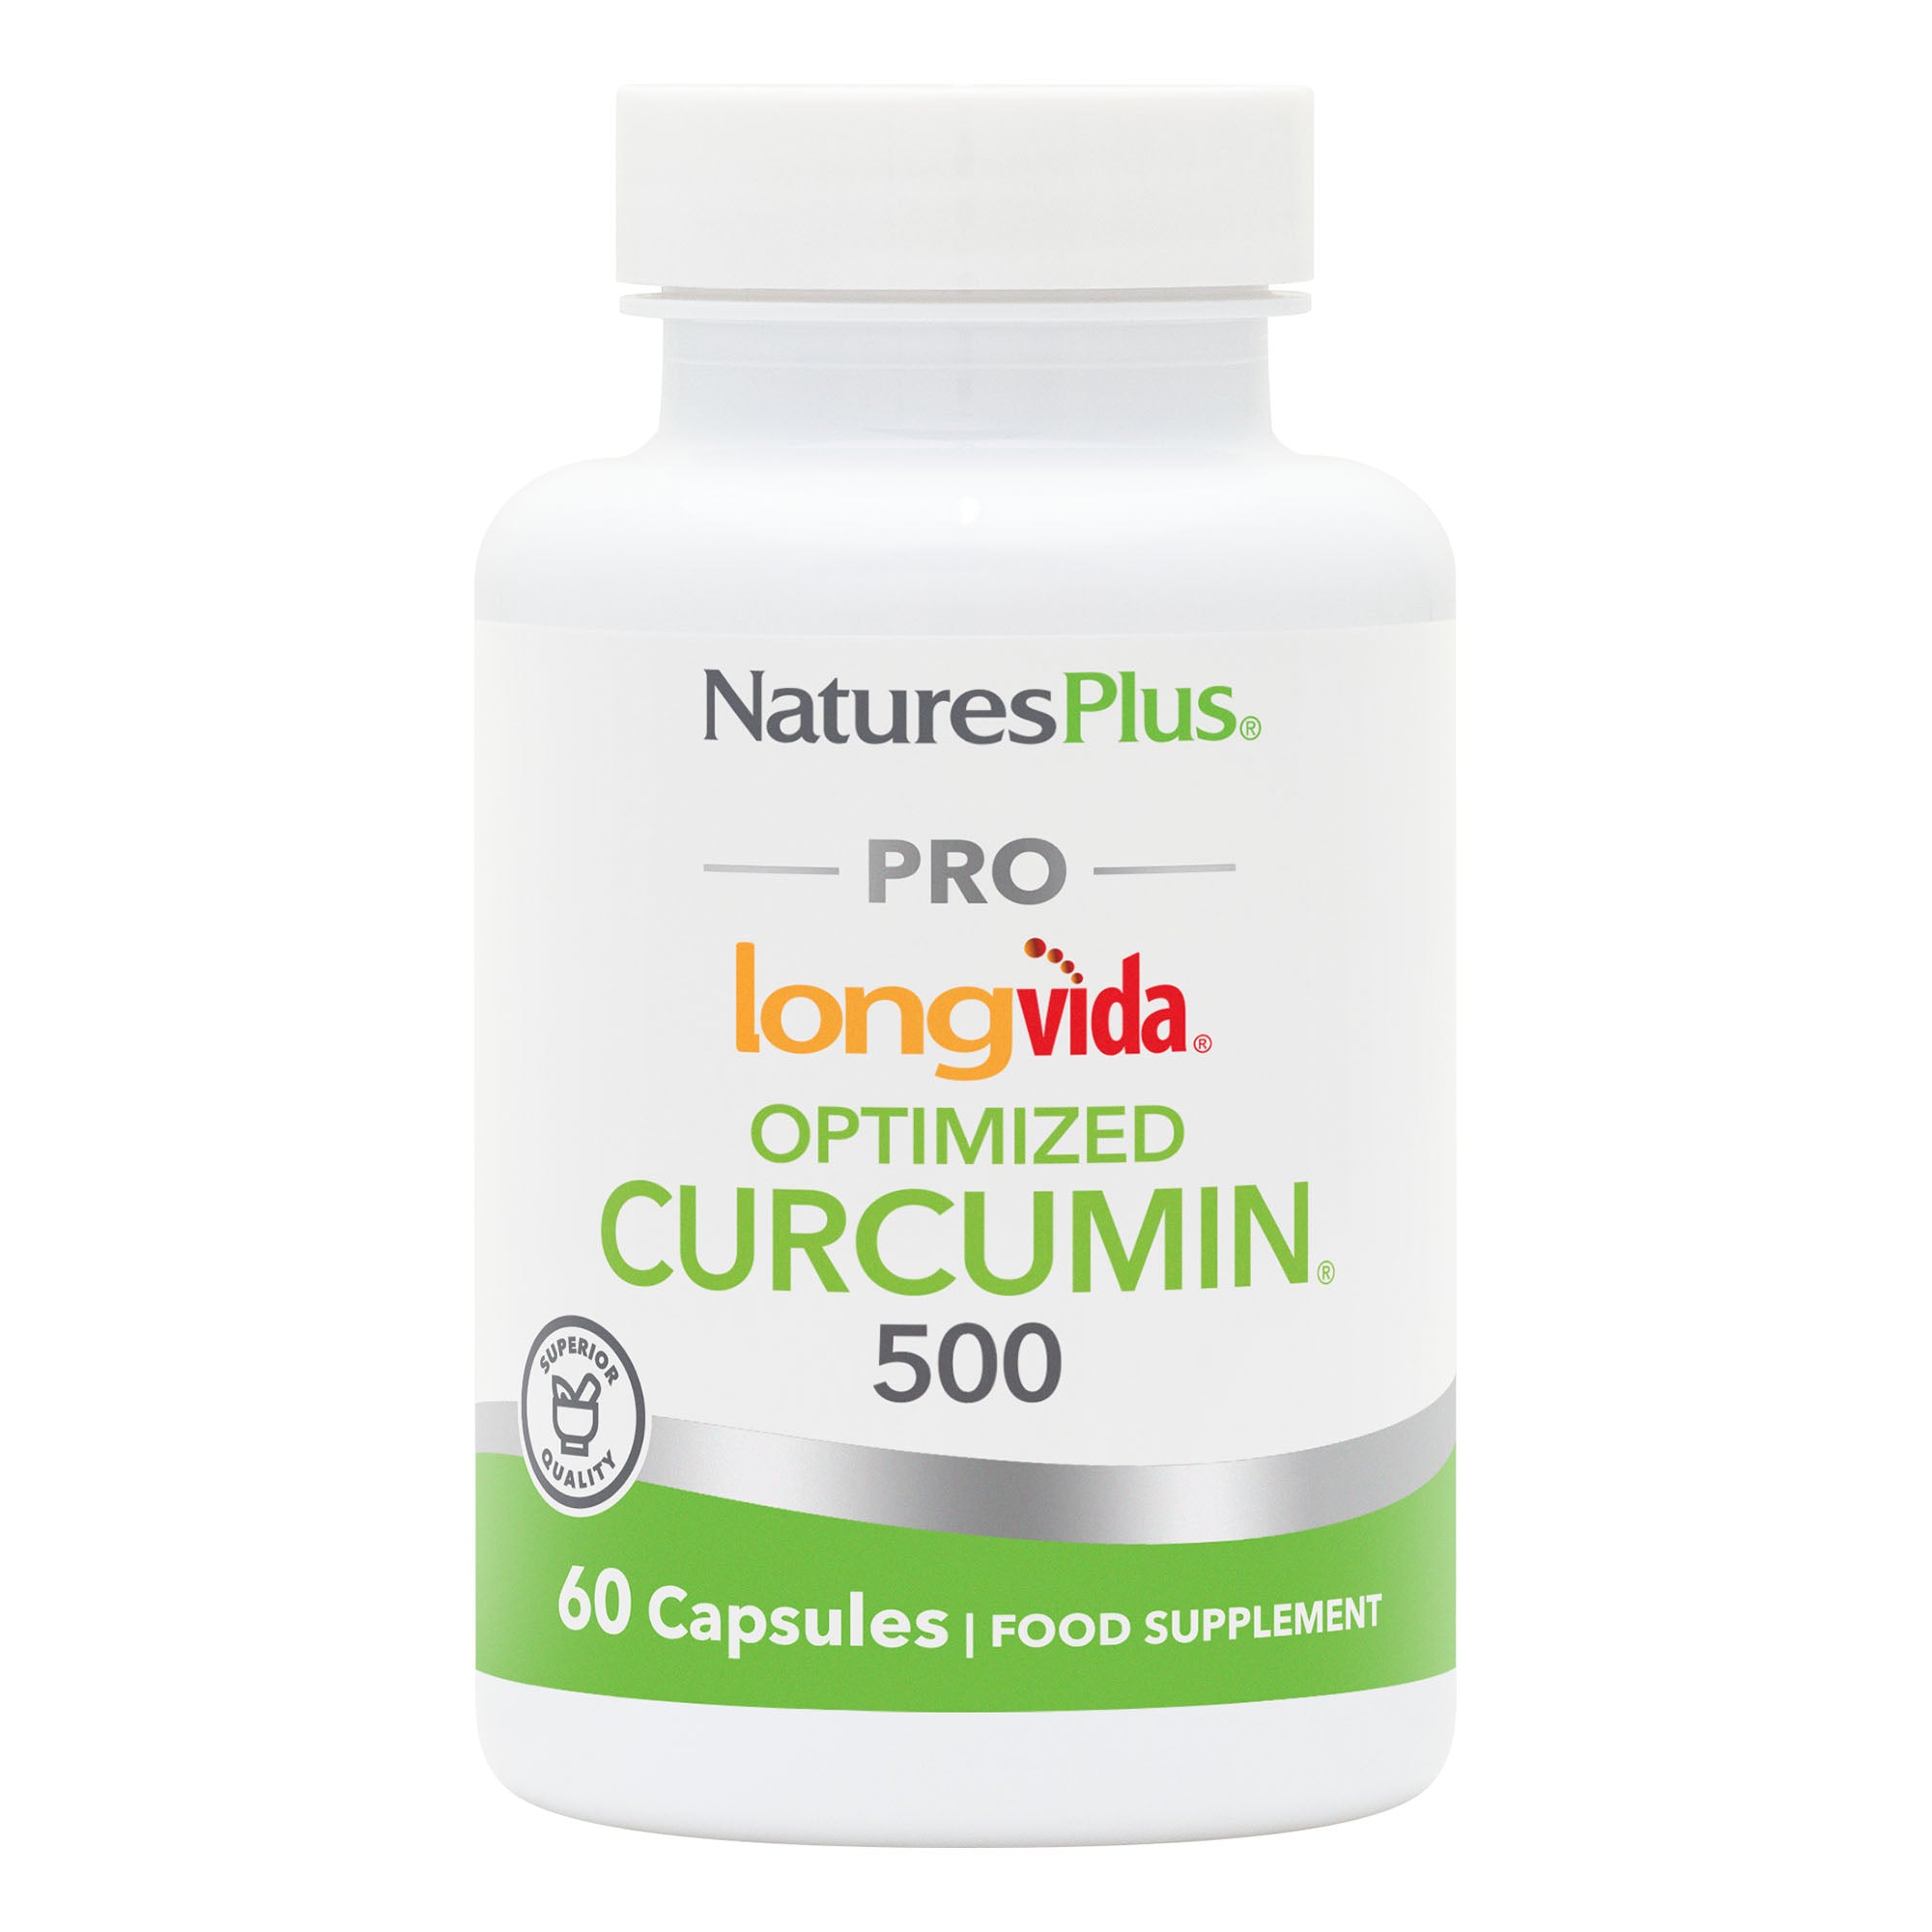 NaturesPlus PRO Curcumin Longvida® 500 MG